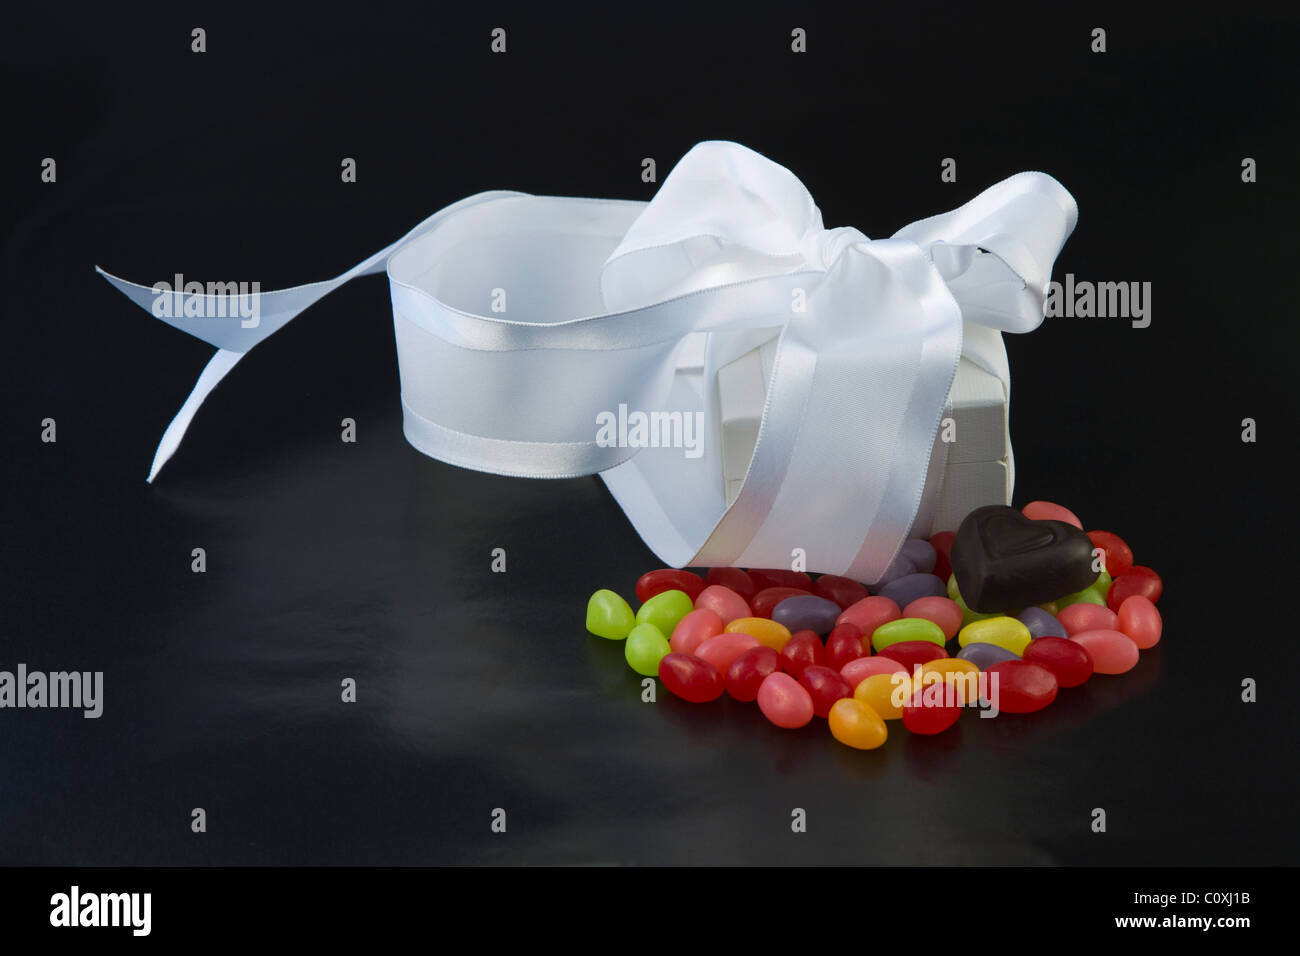 White box gioielli avvolto con il bianco di raso collocato sulla colorata jellybeans con cuore di cioccolato su sfondo nero. Foto Stock